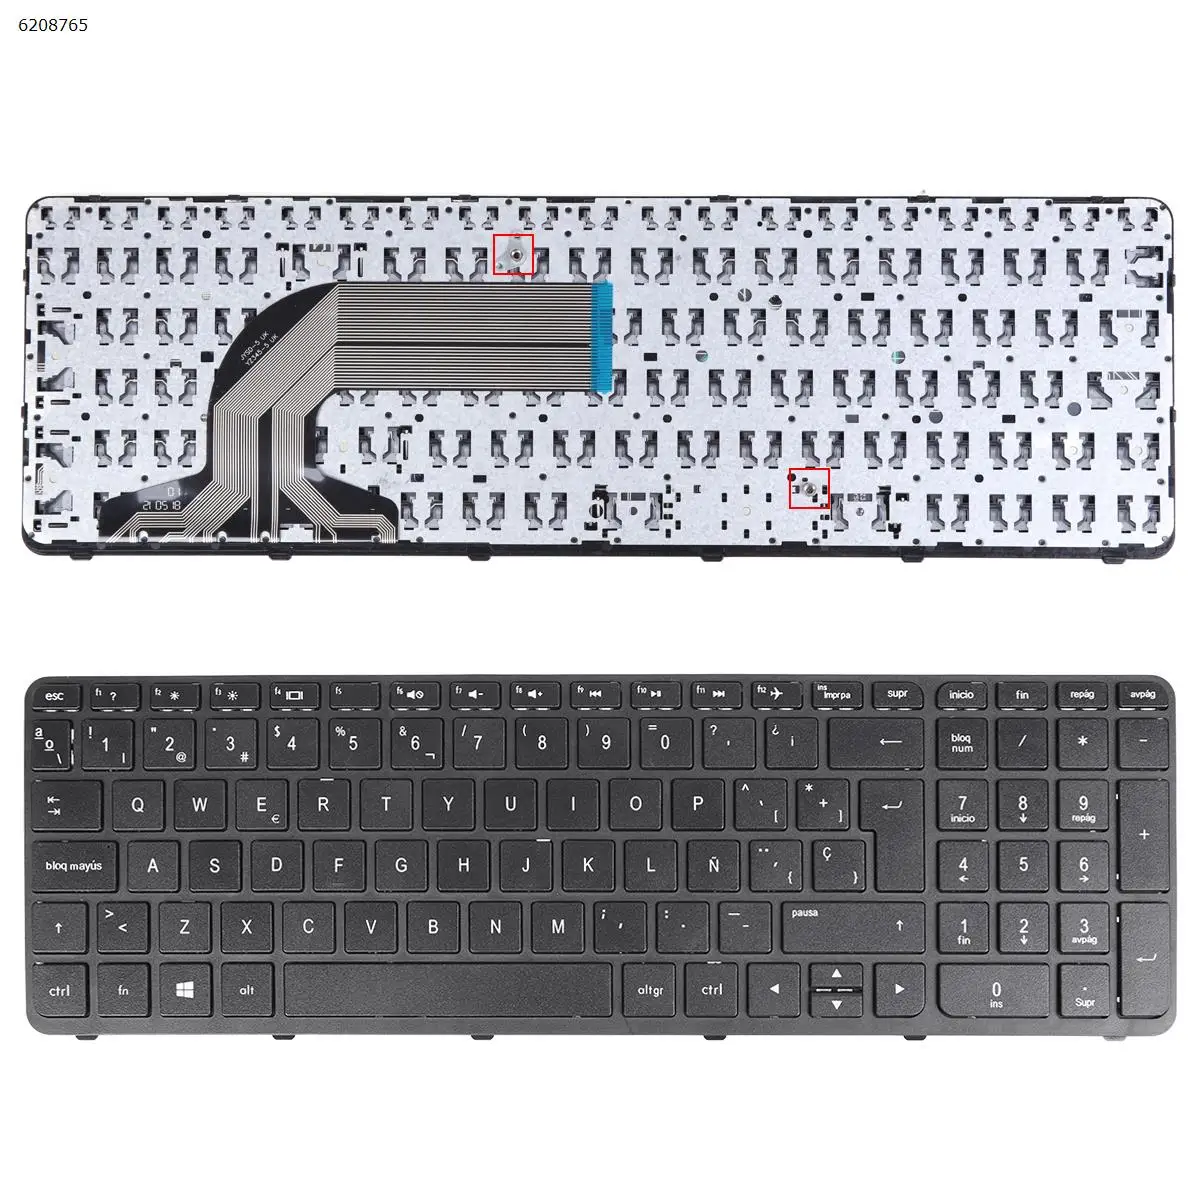 

SP Laptop Keyboard for HP Pavilion 15-n217so 15-n030so 15-n049so 15-e050eo 15-e050so 15-e051so 15-e052so BLACK FRAME BLACK